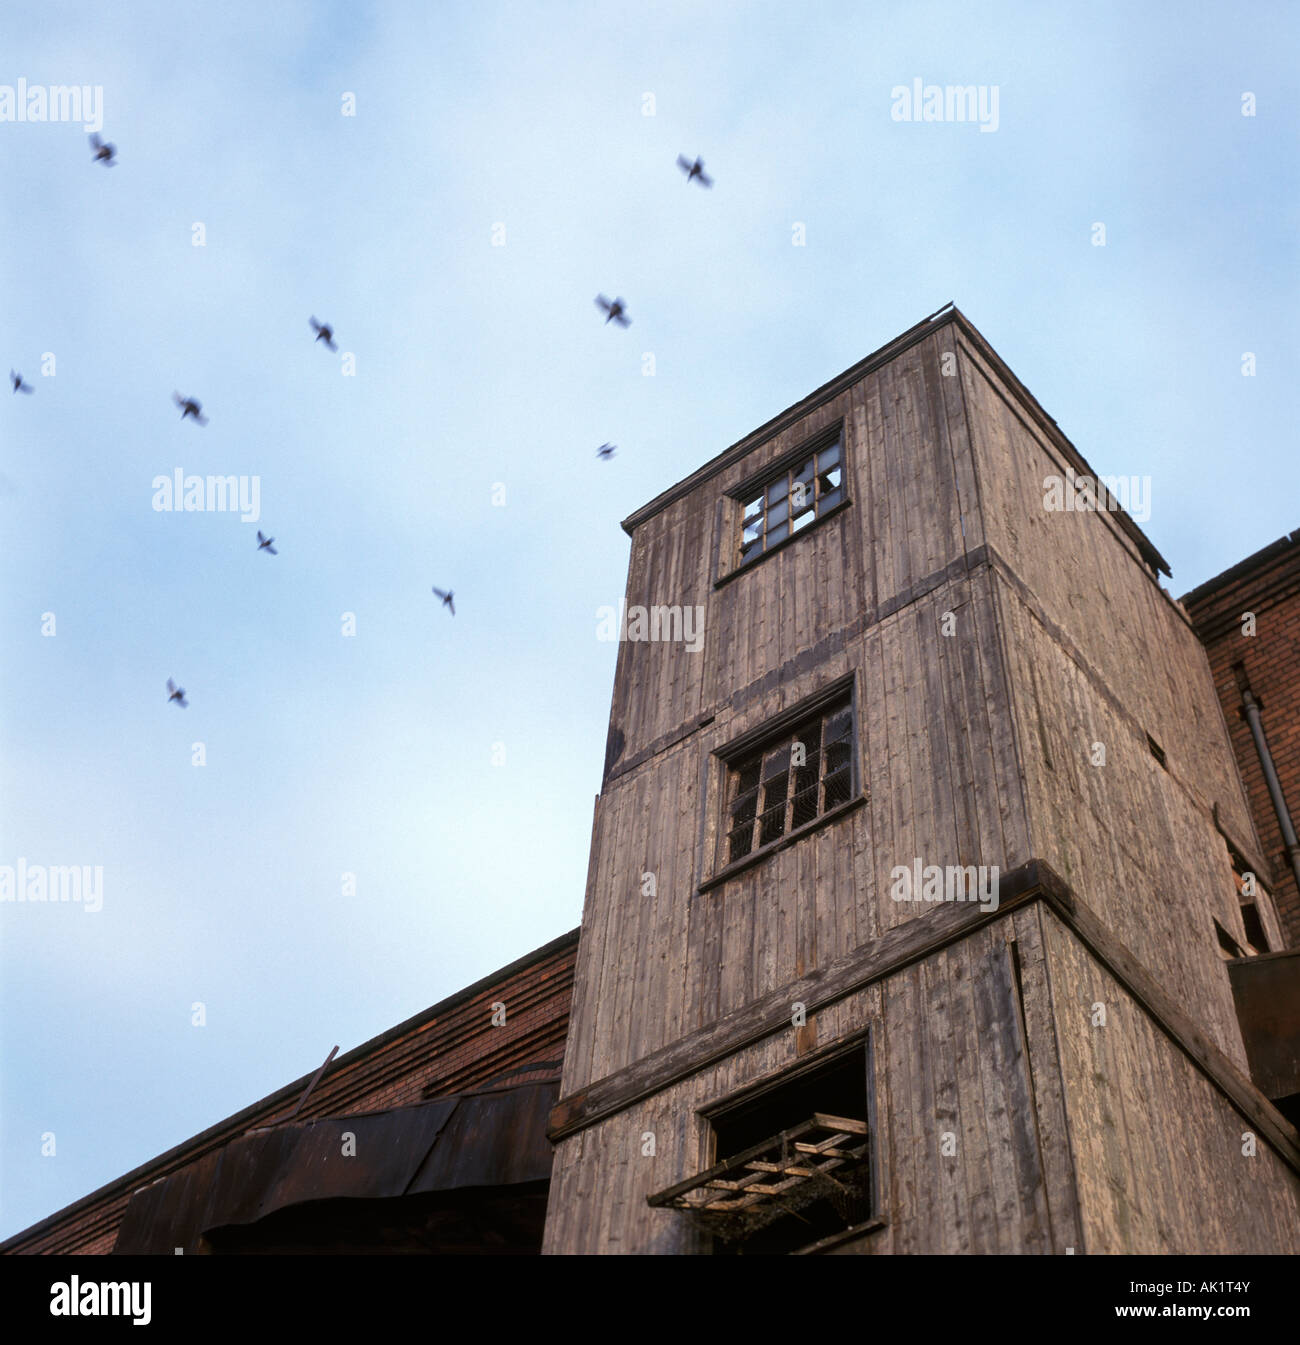 Entrepôt abandonné avec les pigeons qui survolent - Nottingham, Royaume-Uni Banque D'Images